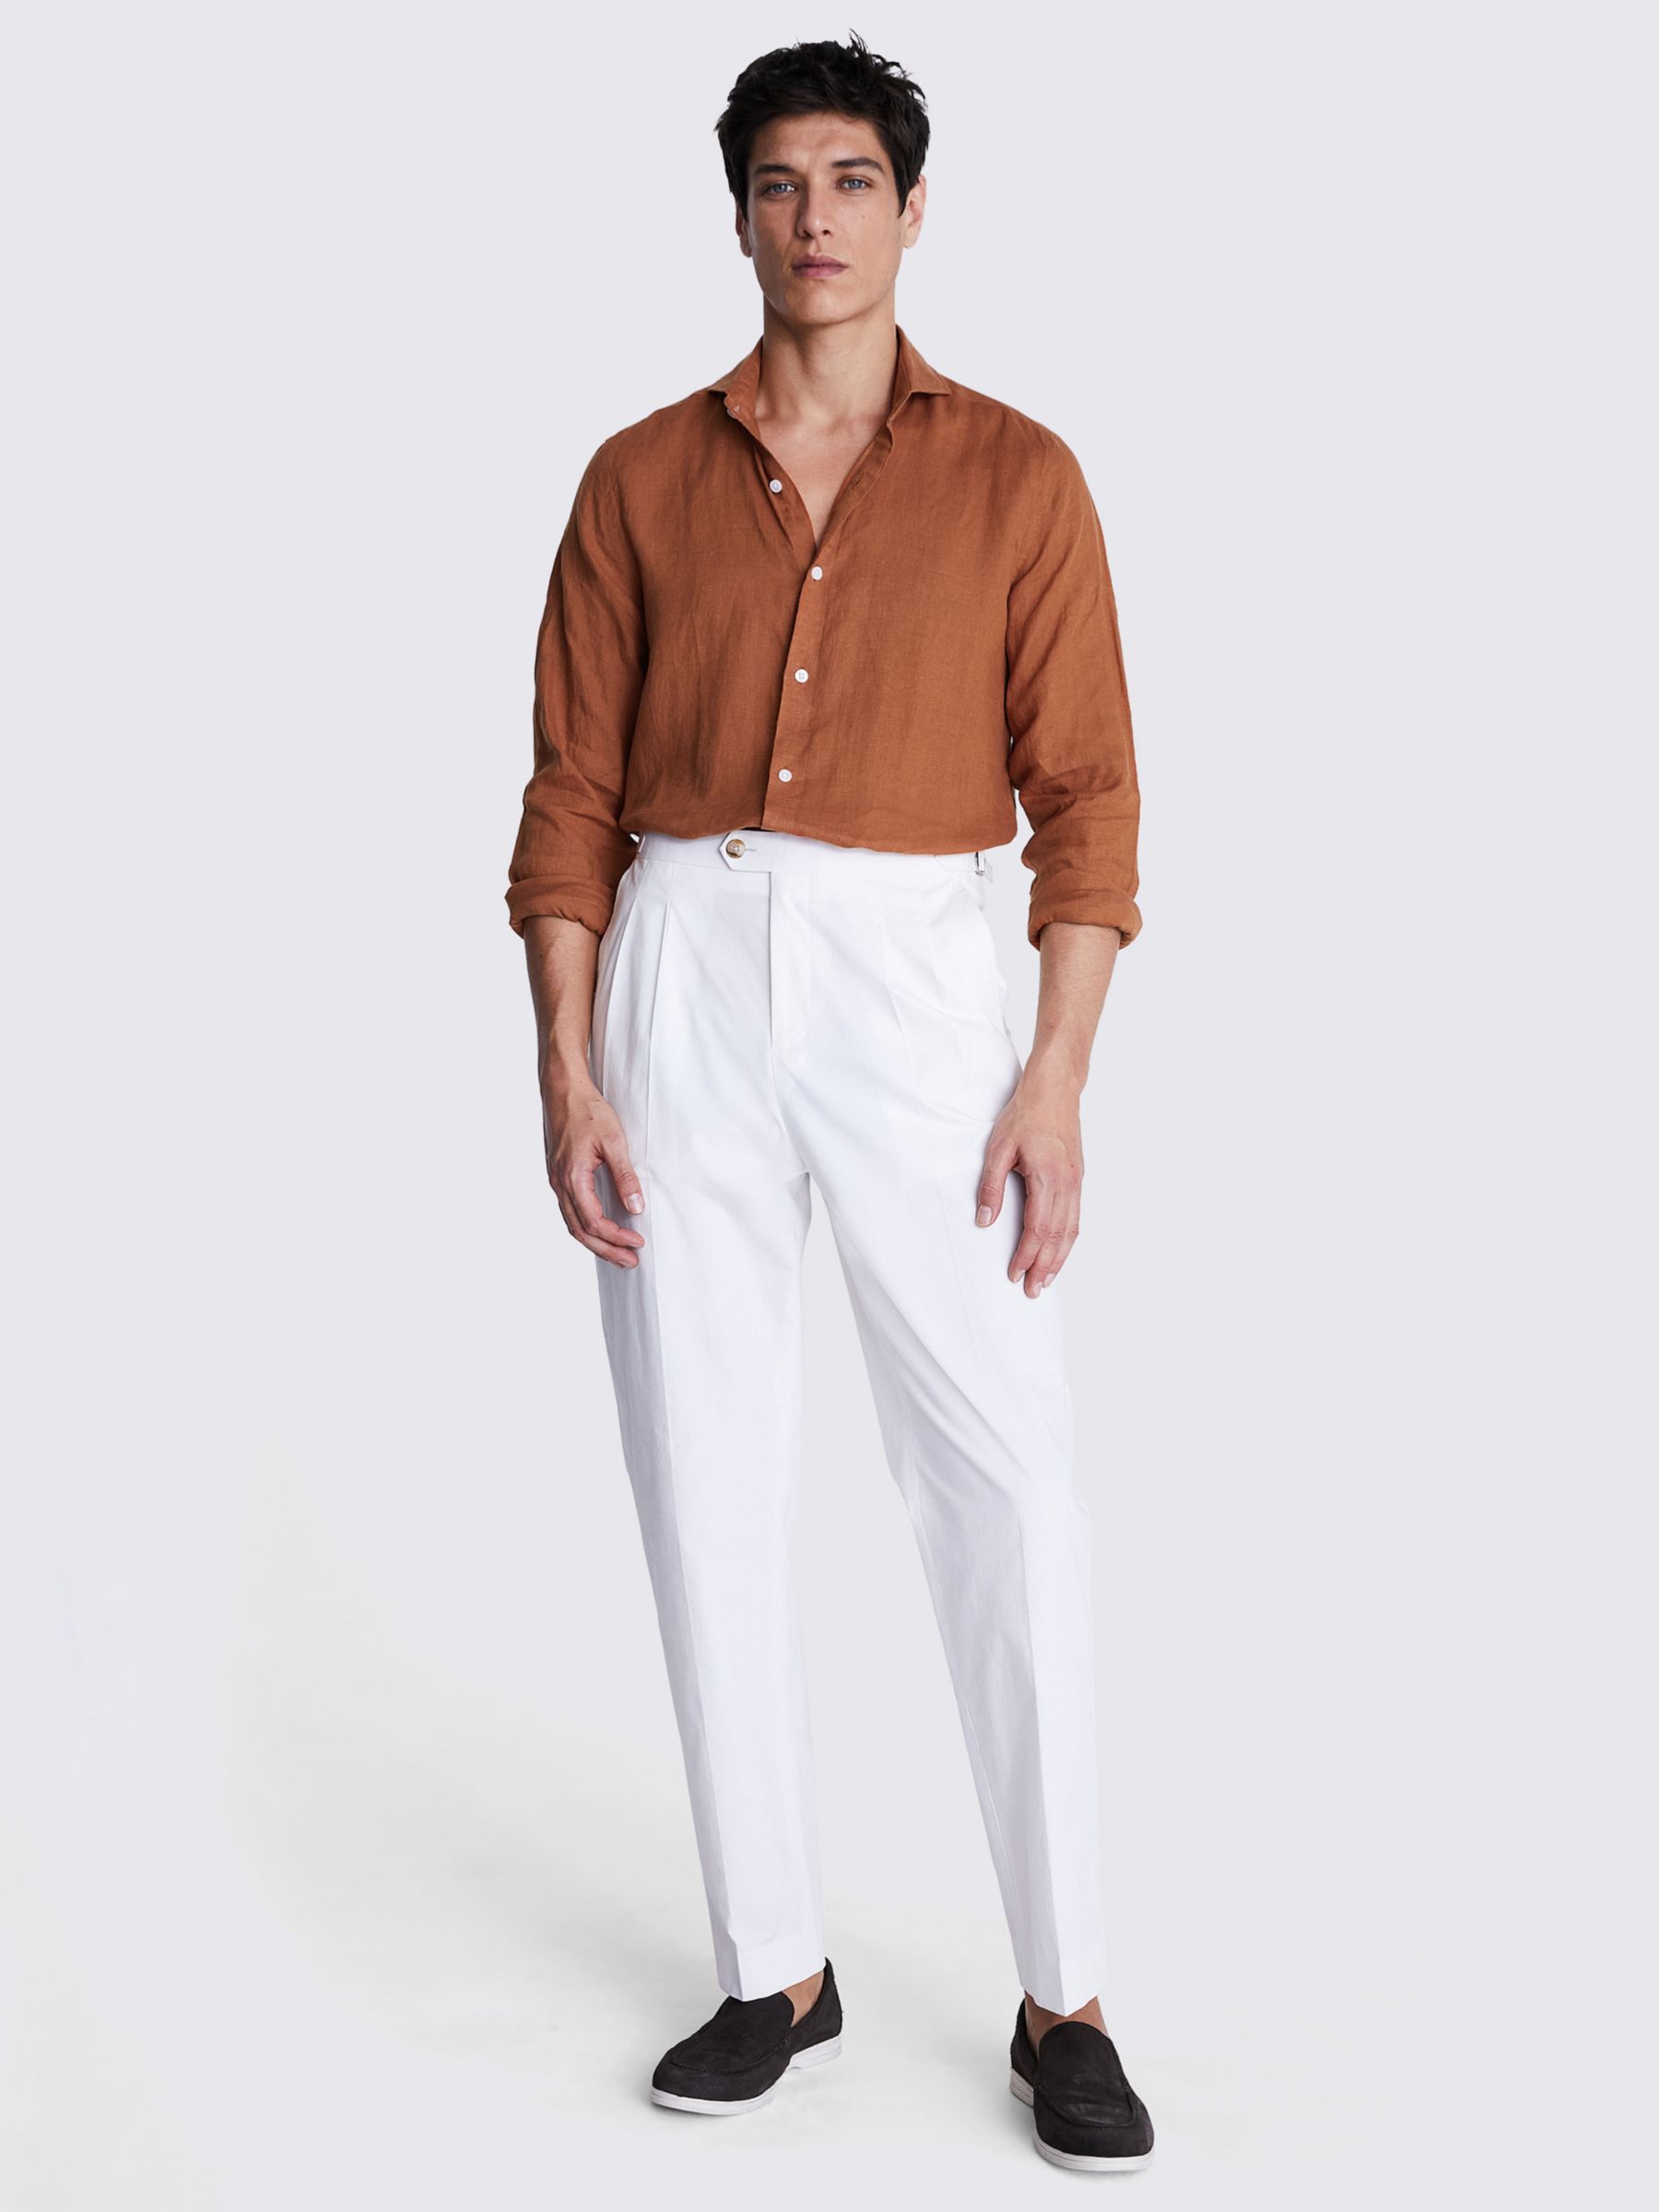 Moss Tailored Fit Linen Long Sleeve Shirt, Brown, S